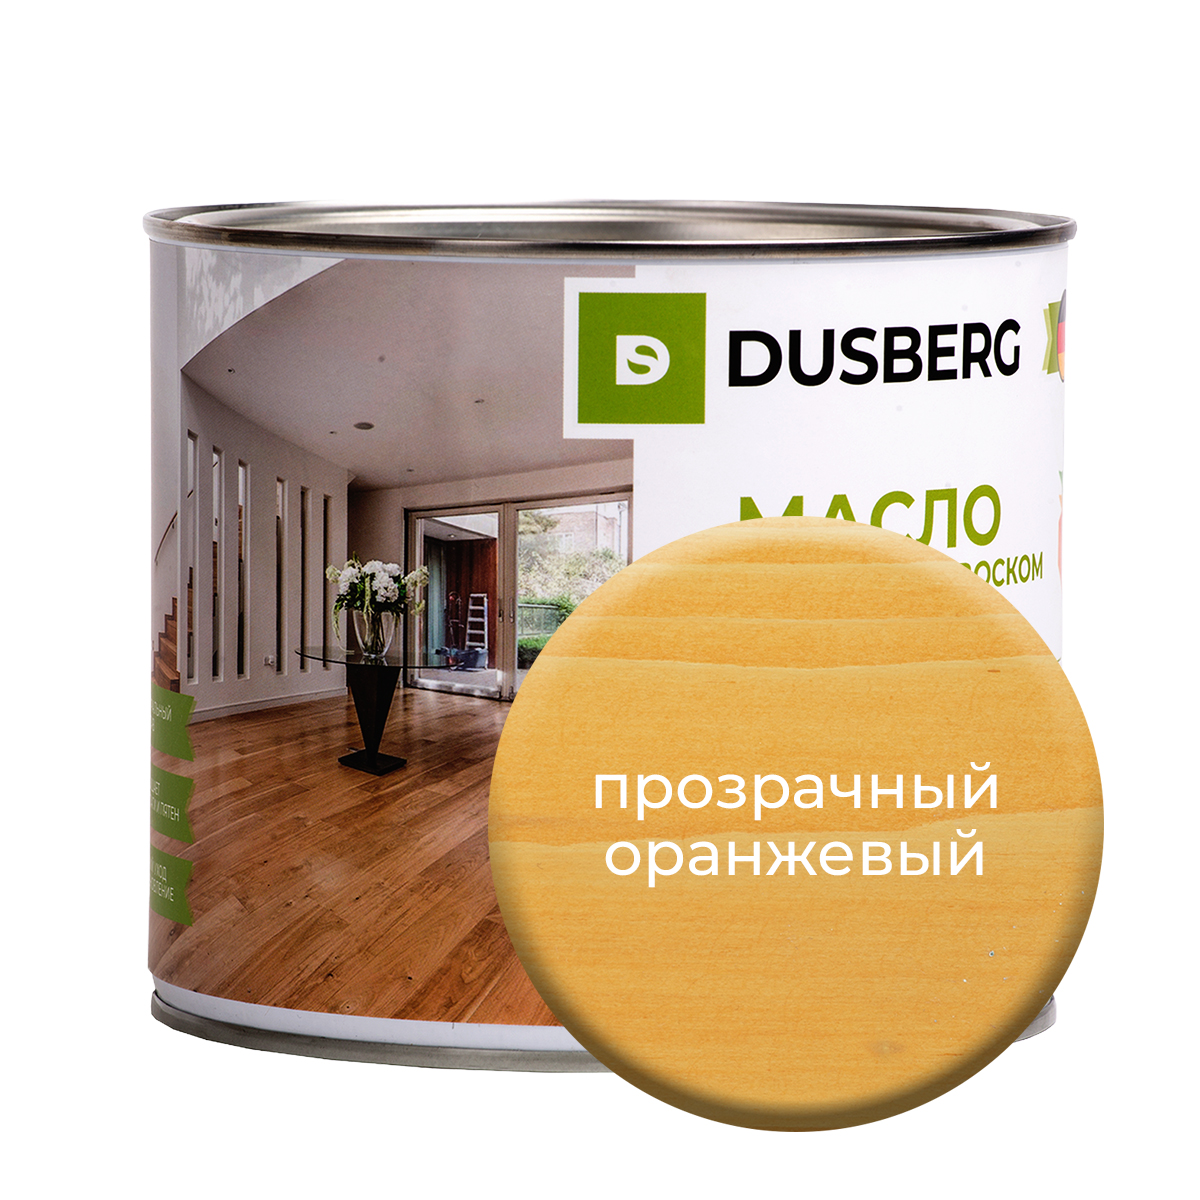 Масло Dusberg с твердым воском на бесцветной основе, 2 л Прозрачный оранжевый масло для столешниц dusberg